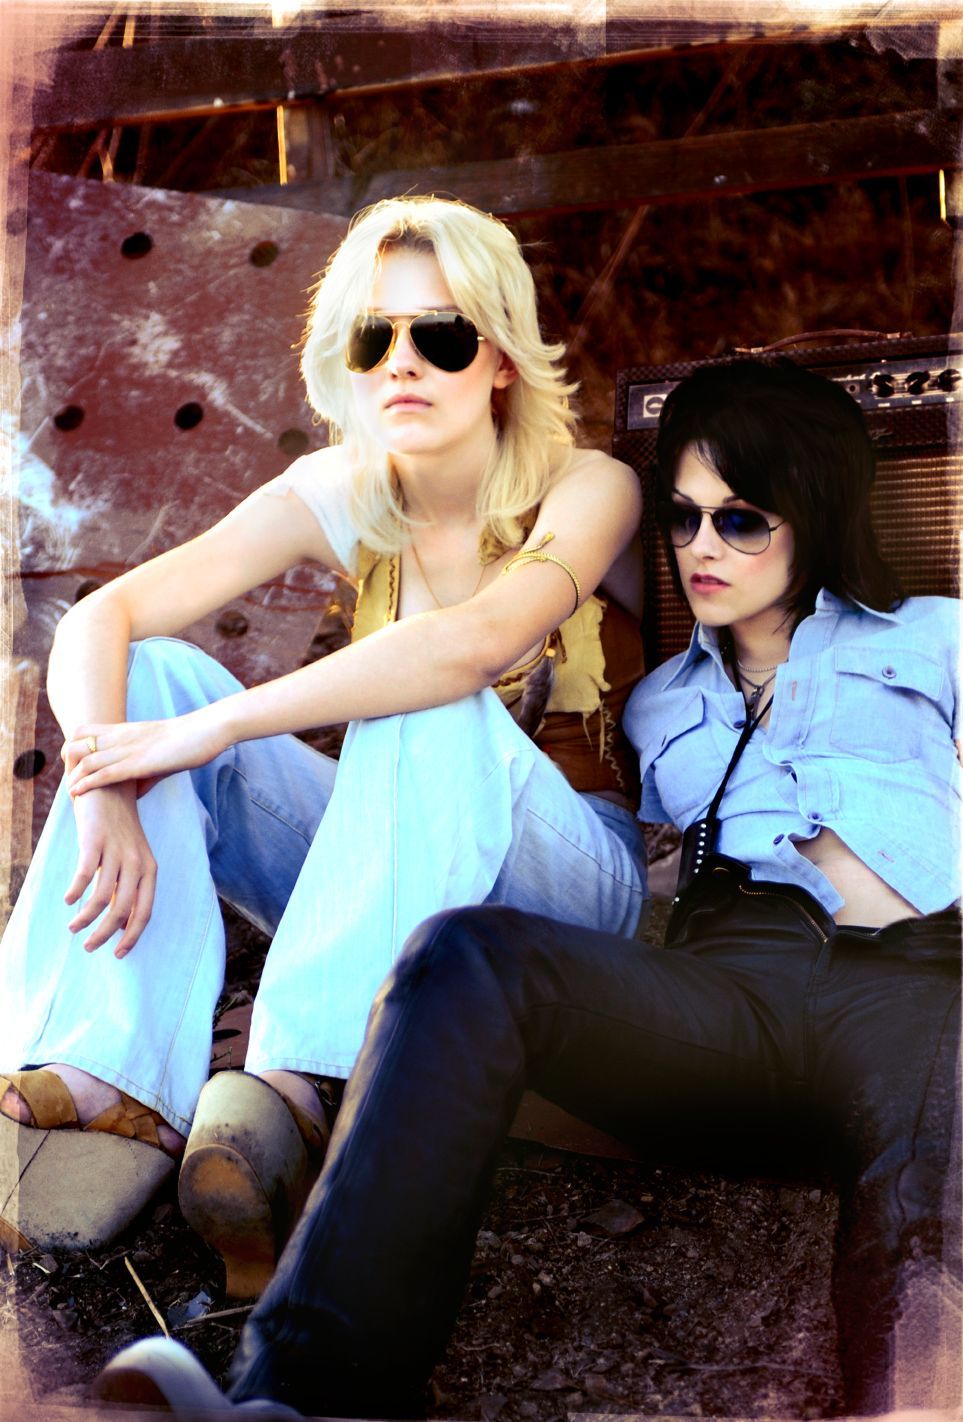 Still of Dakota Fanning and Kristen Stewart in The Runaways (2010)